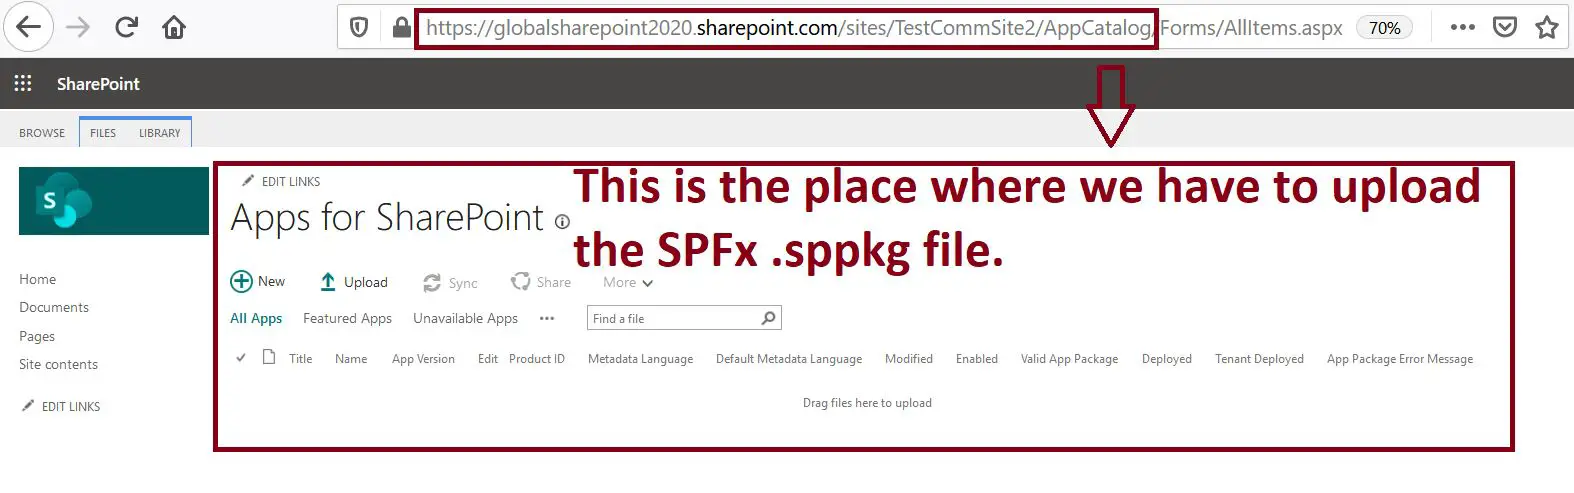 Apps for SharePoint library for SPFx SharePoint Online Site collection scope, site collection scoped app catalog